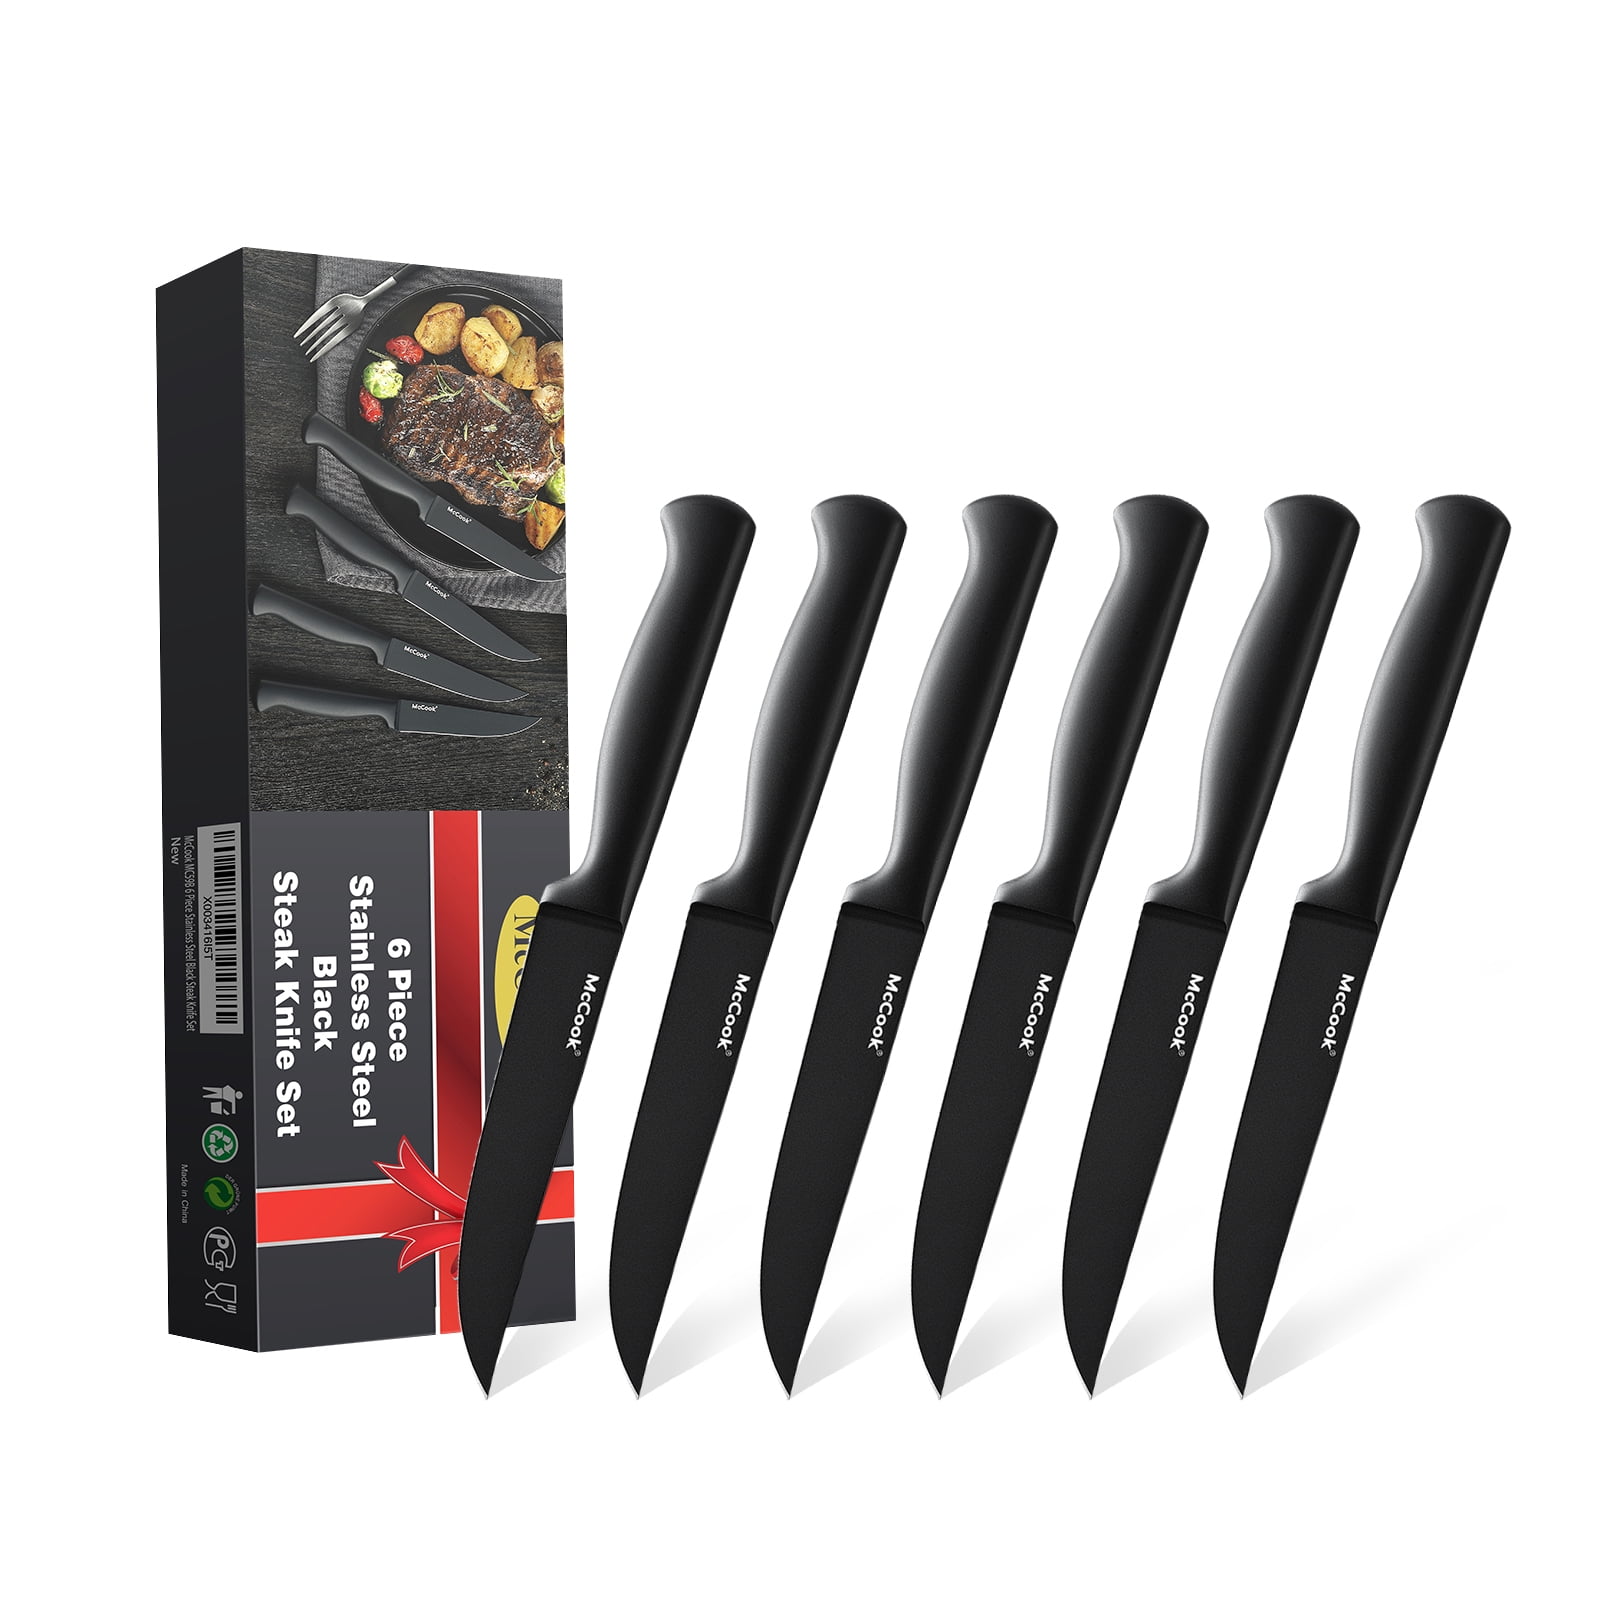 McCook DISHWASHER SAFE MC701 Black Knife Sets of 26, Stainless Steel  Kitchen Kni